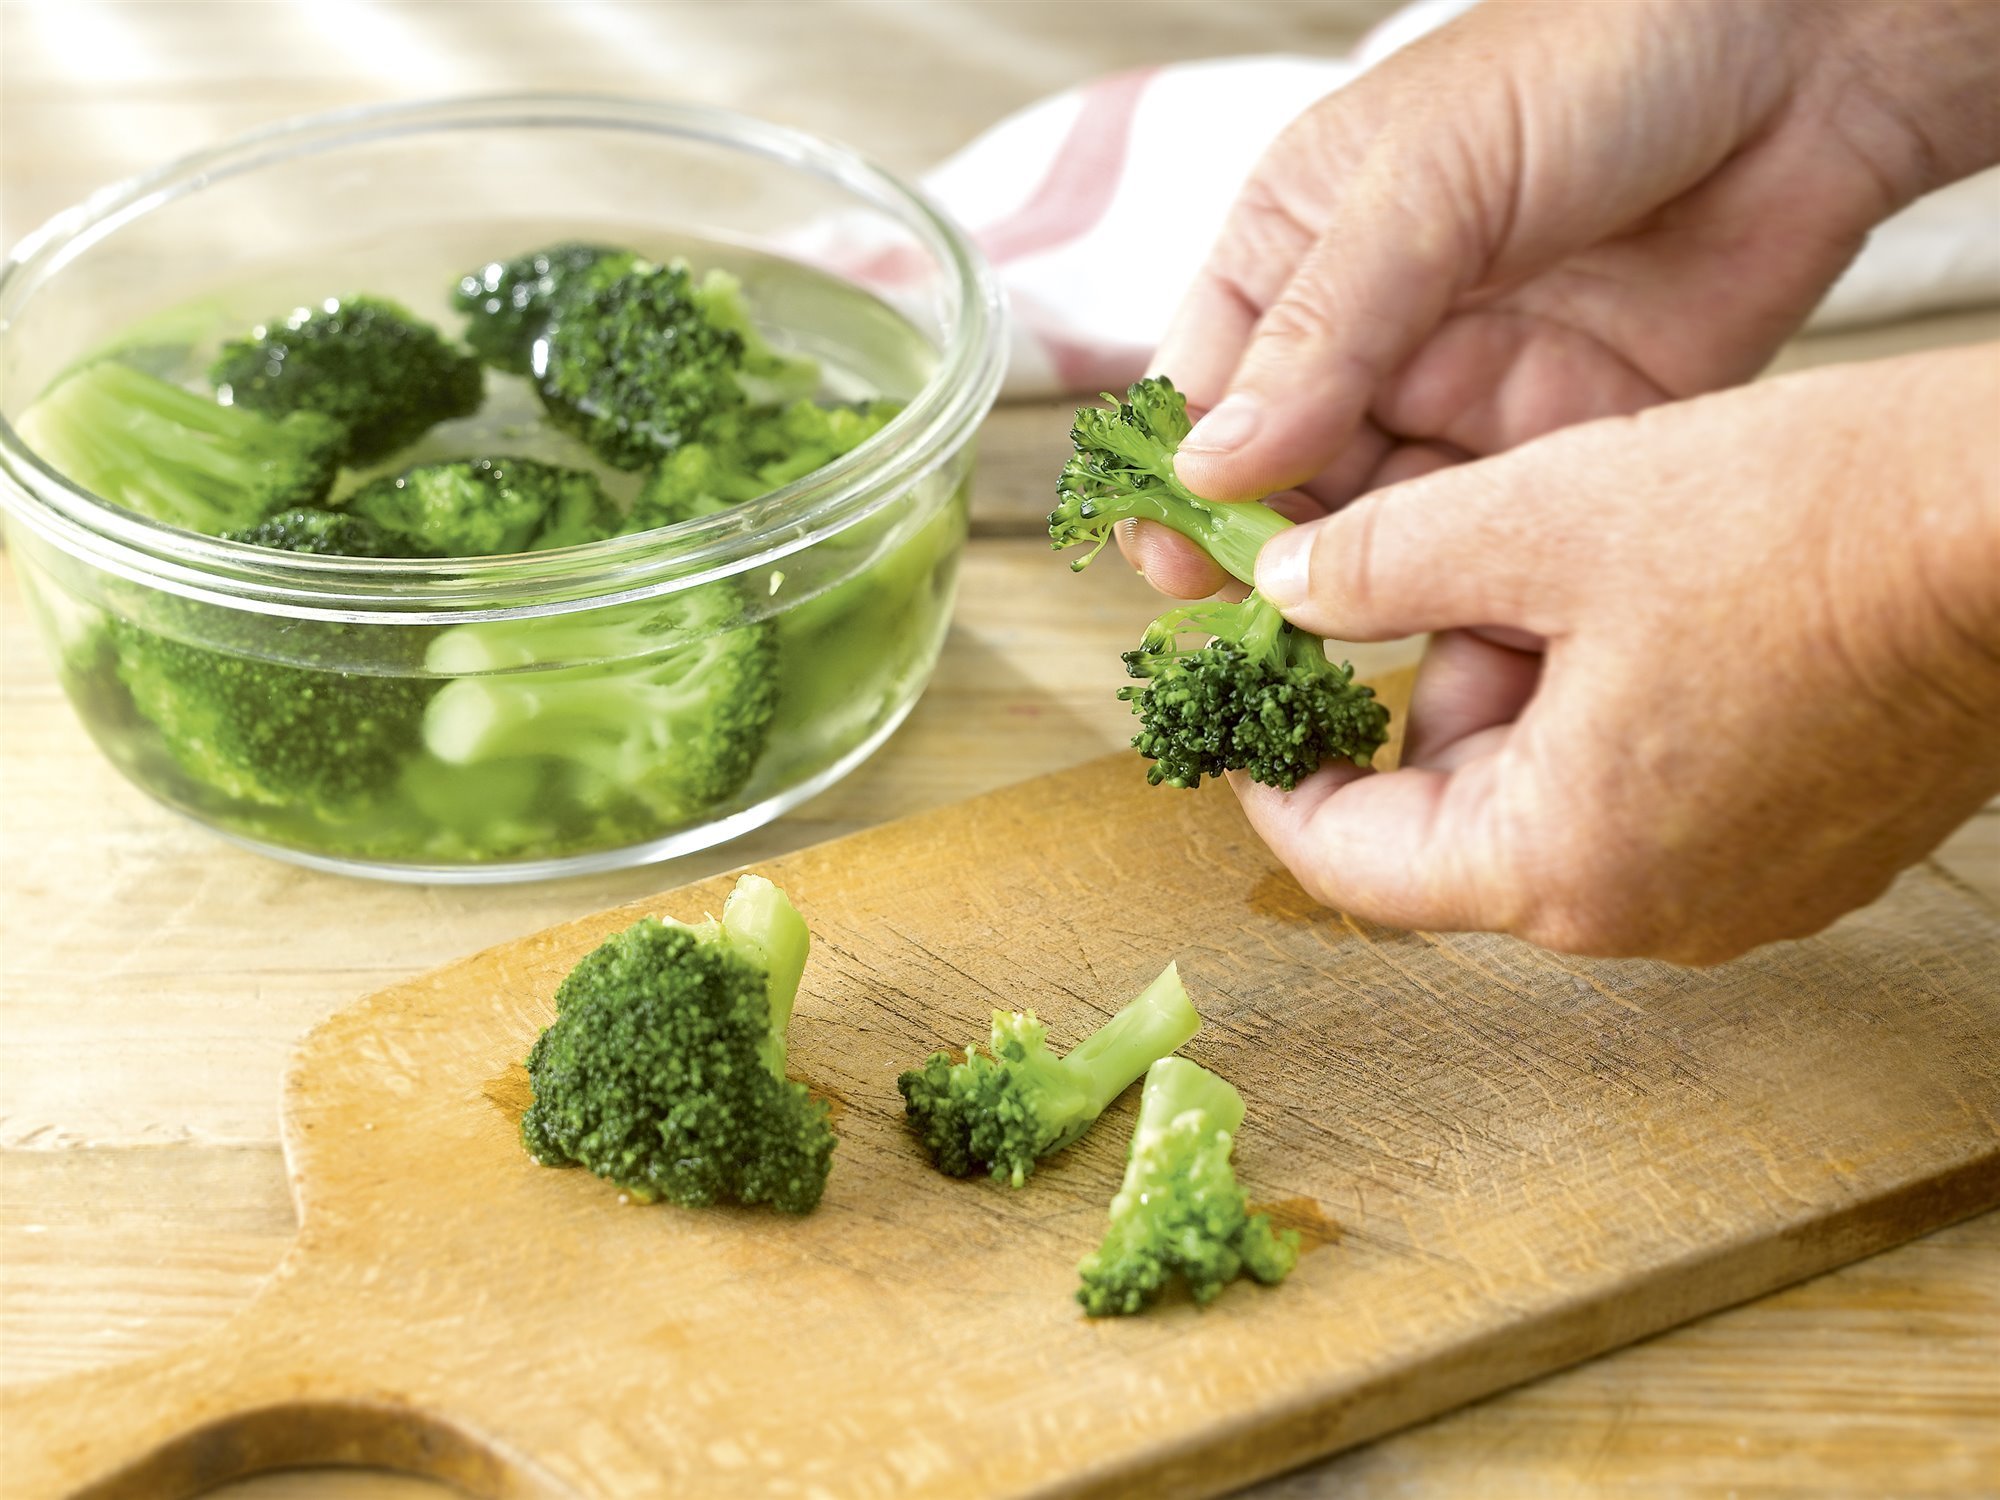 1. Separa los ramitos de brócoli